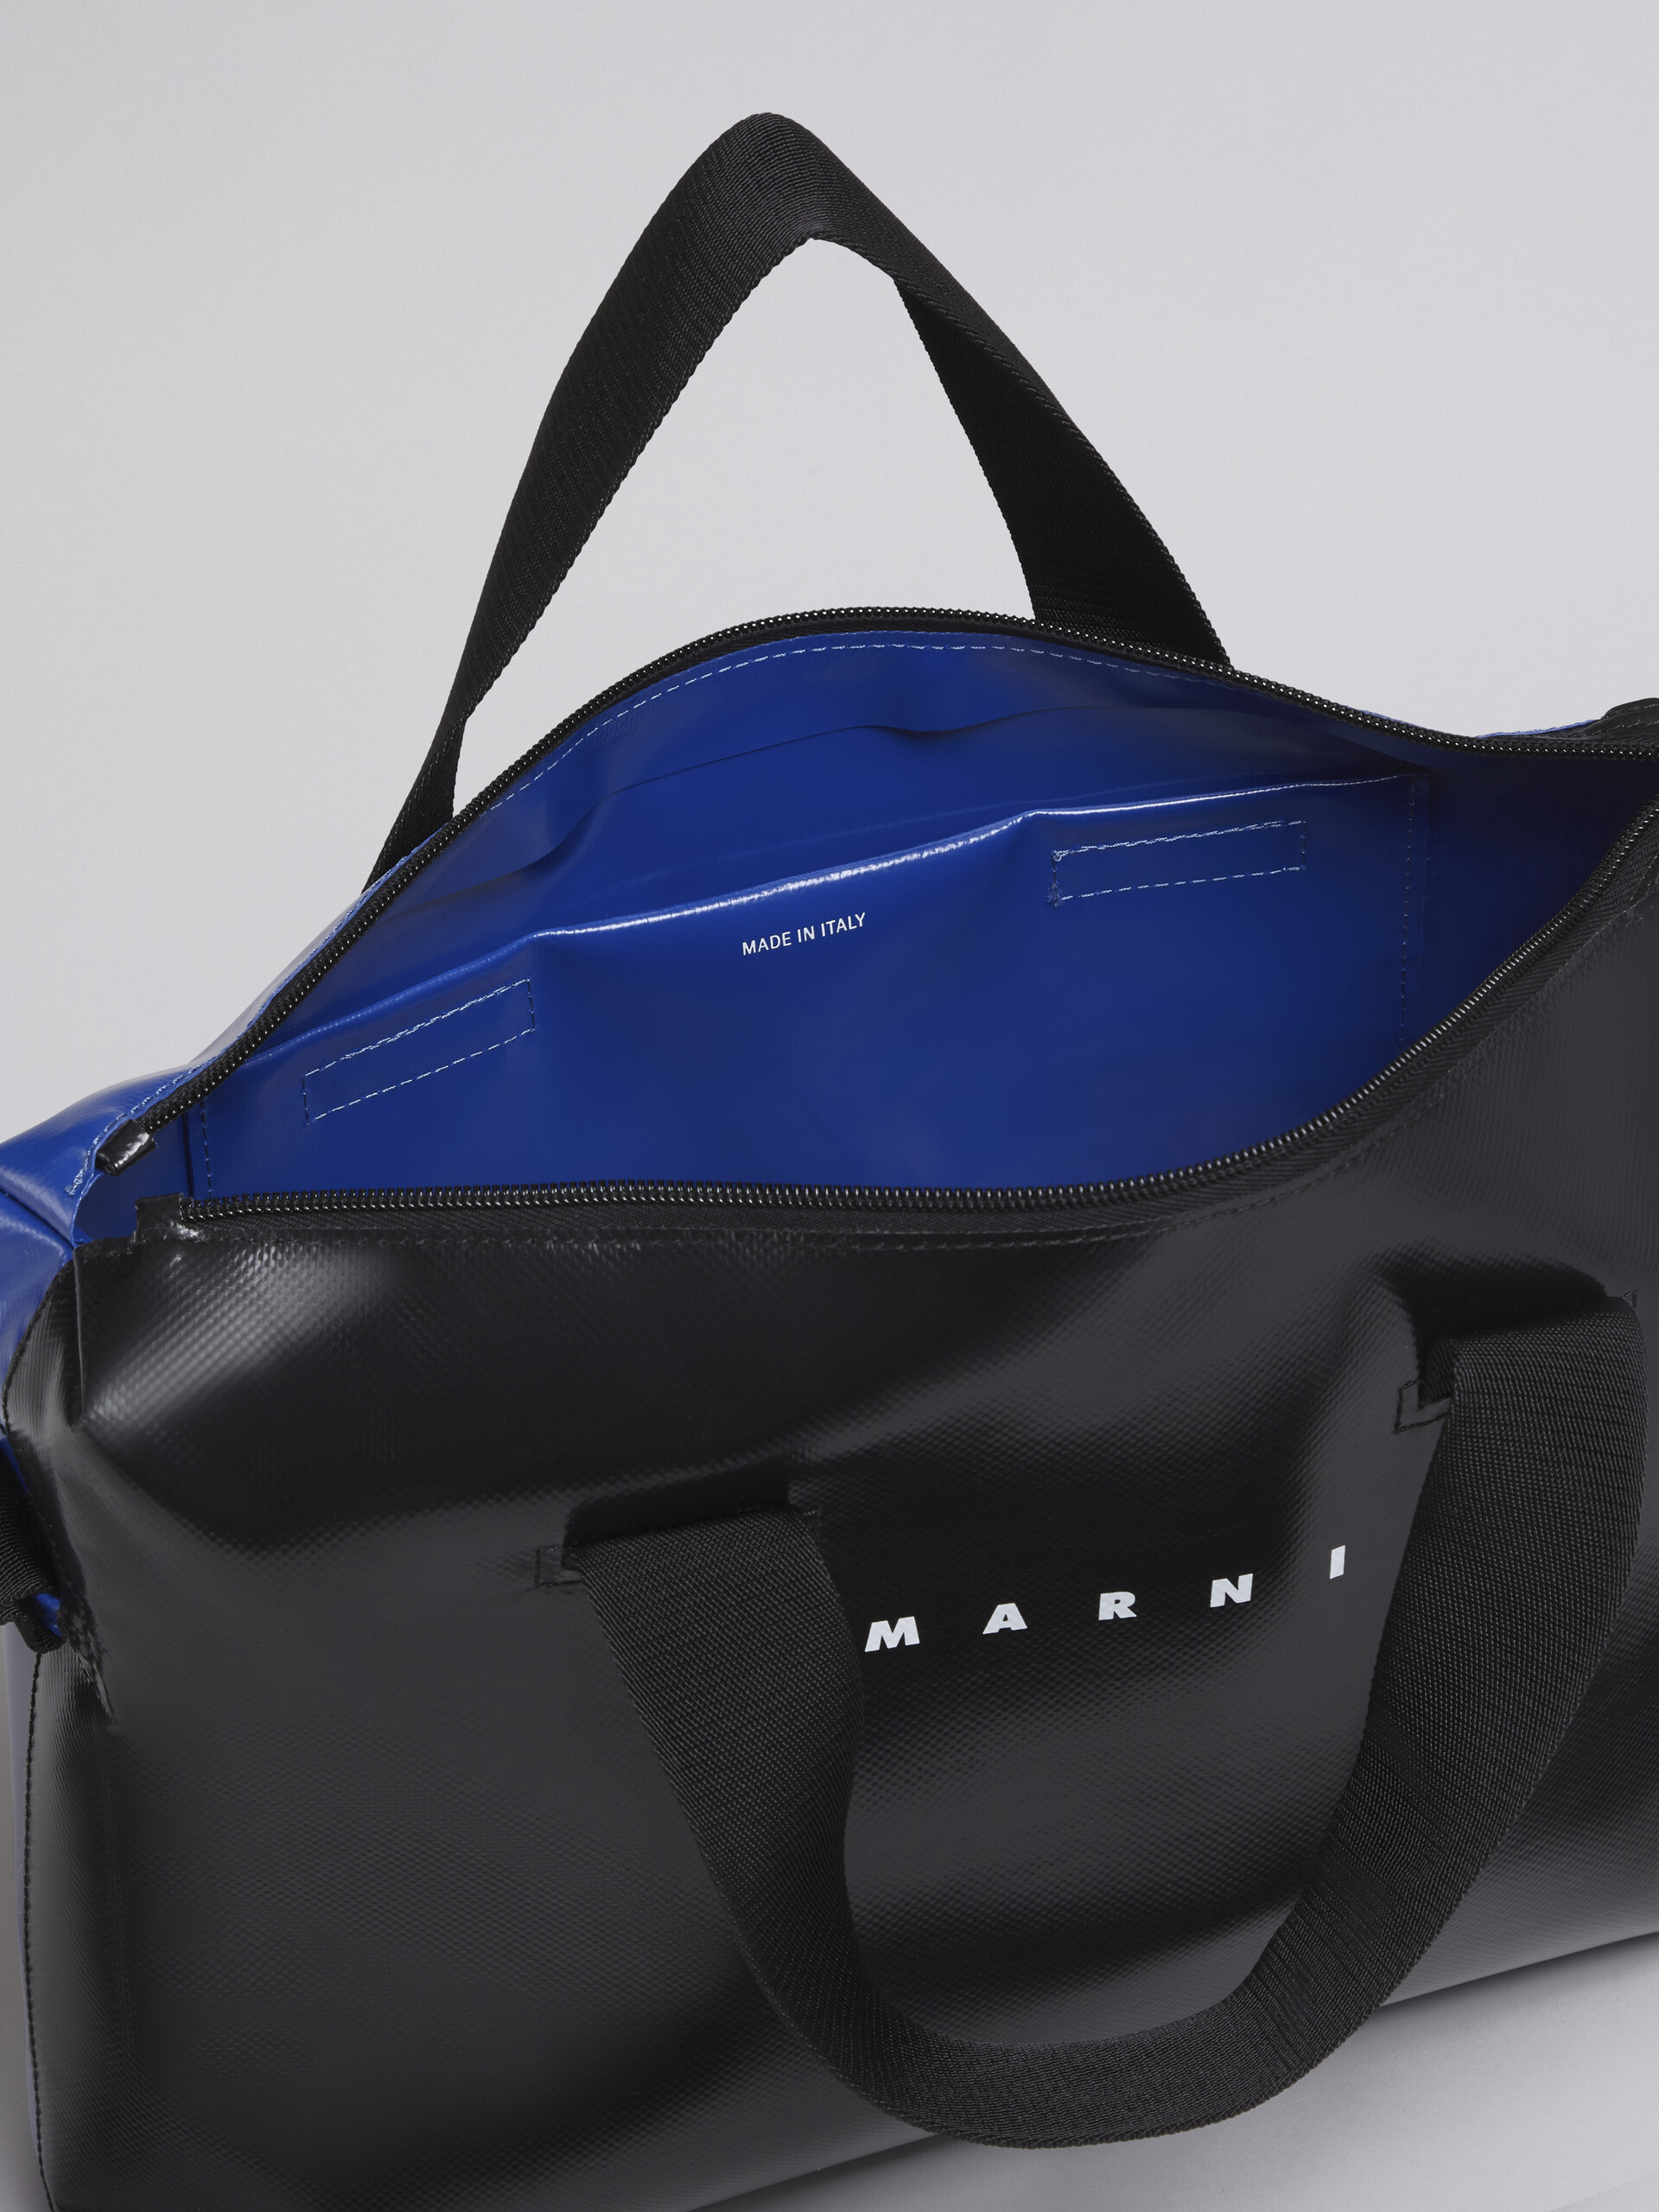 TRIBECA Tasche in Schwarz und Blau - Handtaschen - Image 4